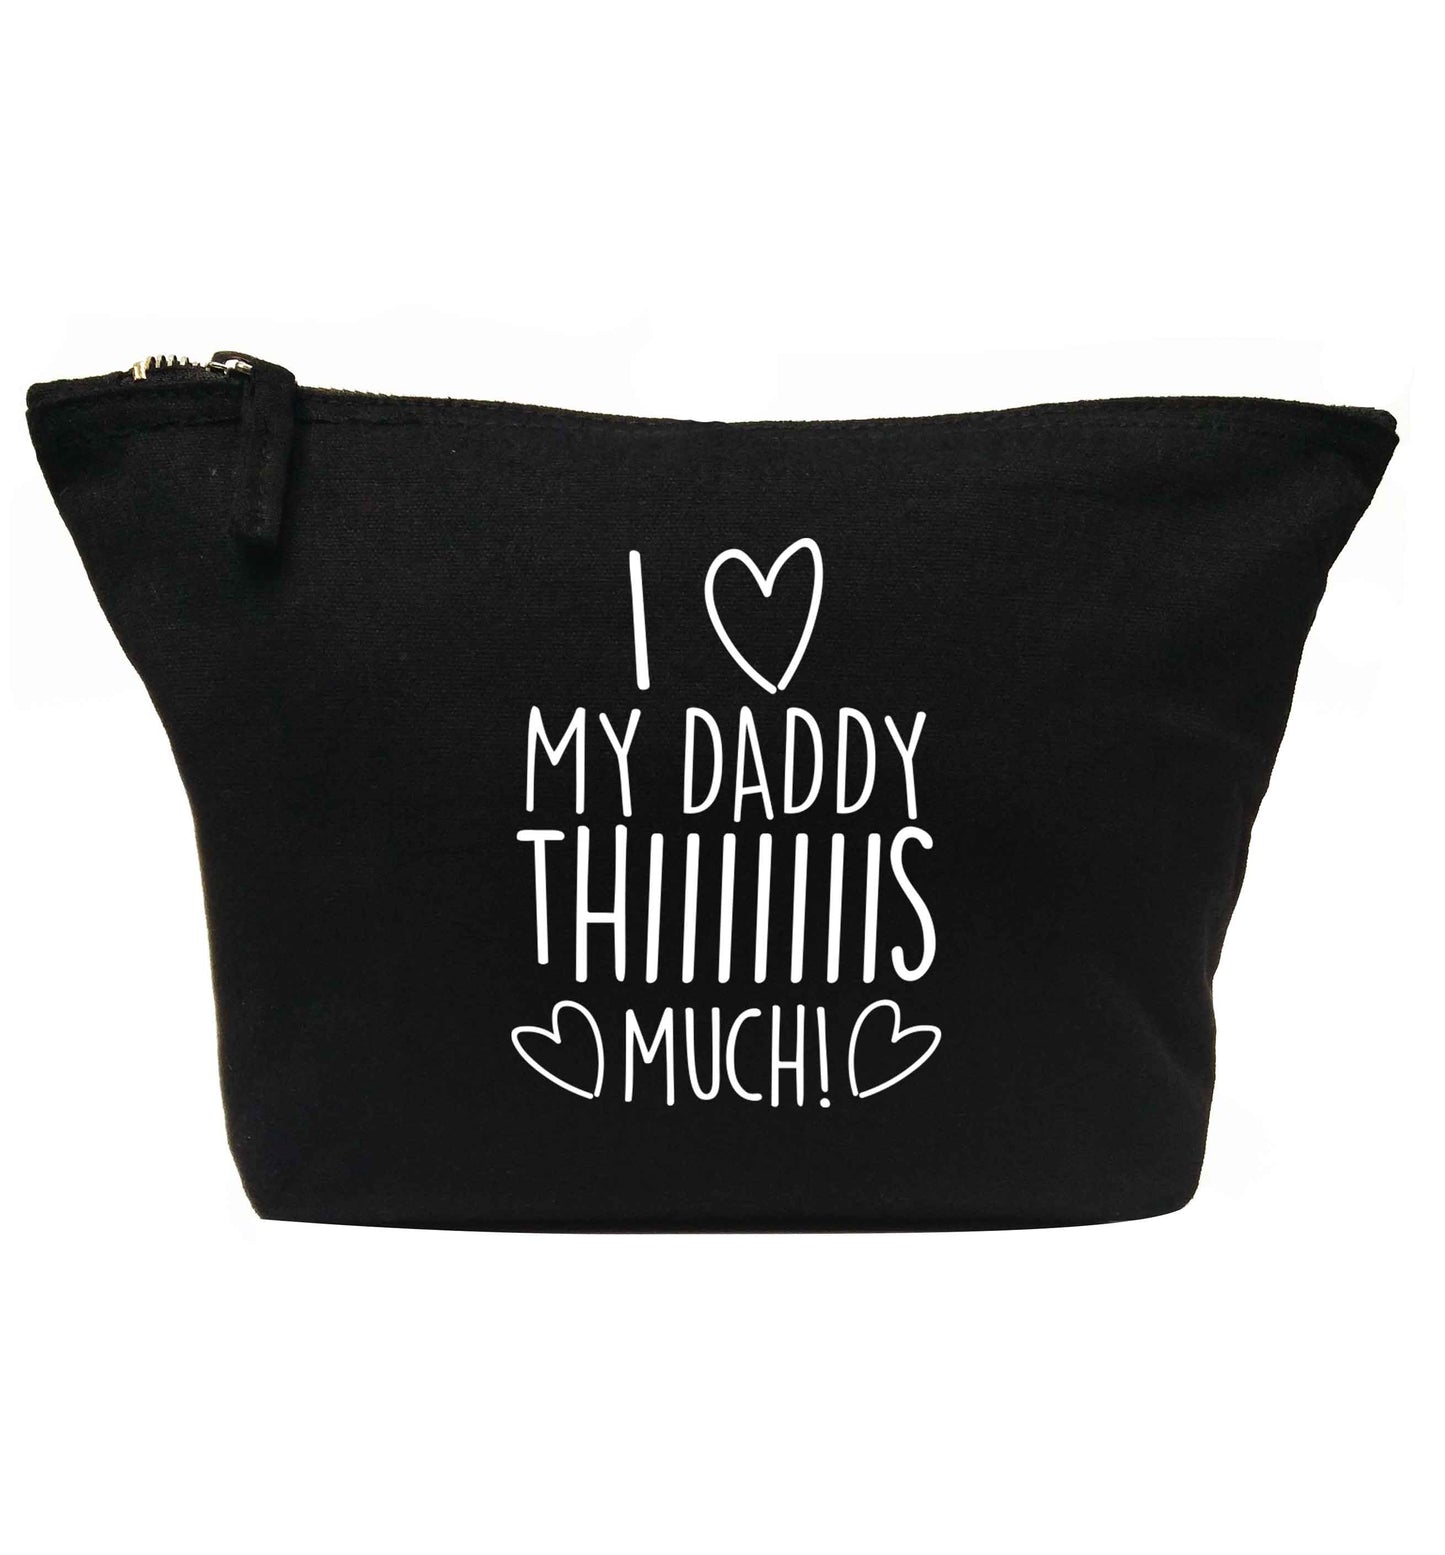 I love my daddy thiiiiis much! | Makeup / wash bag